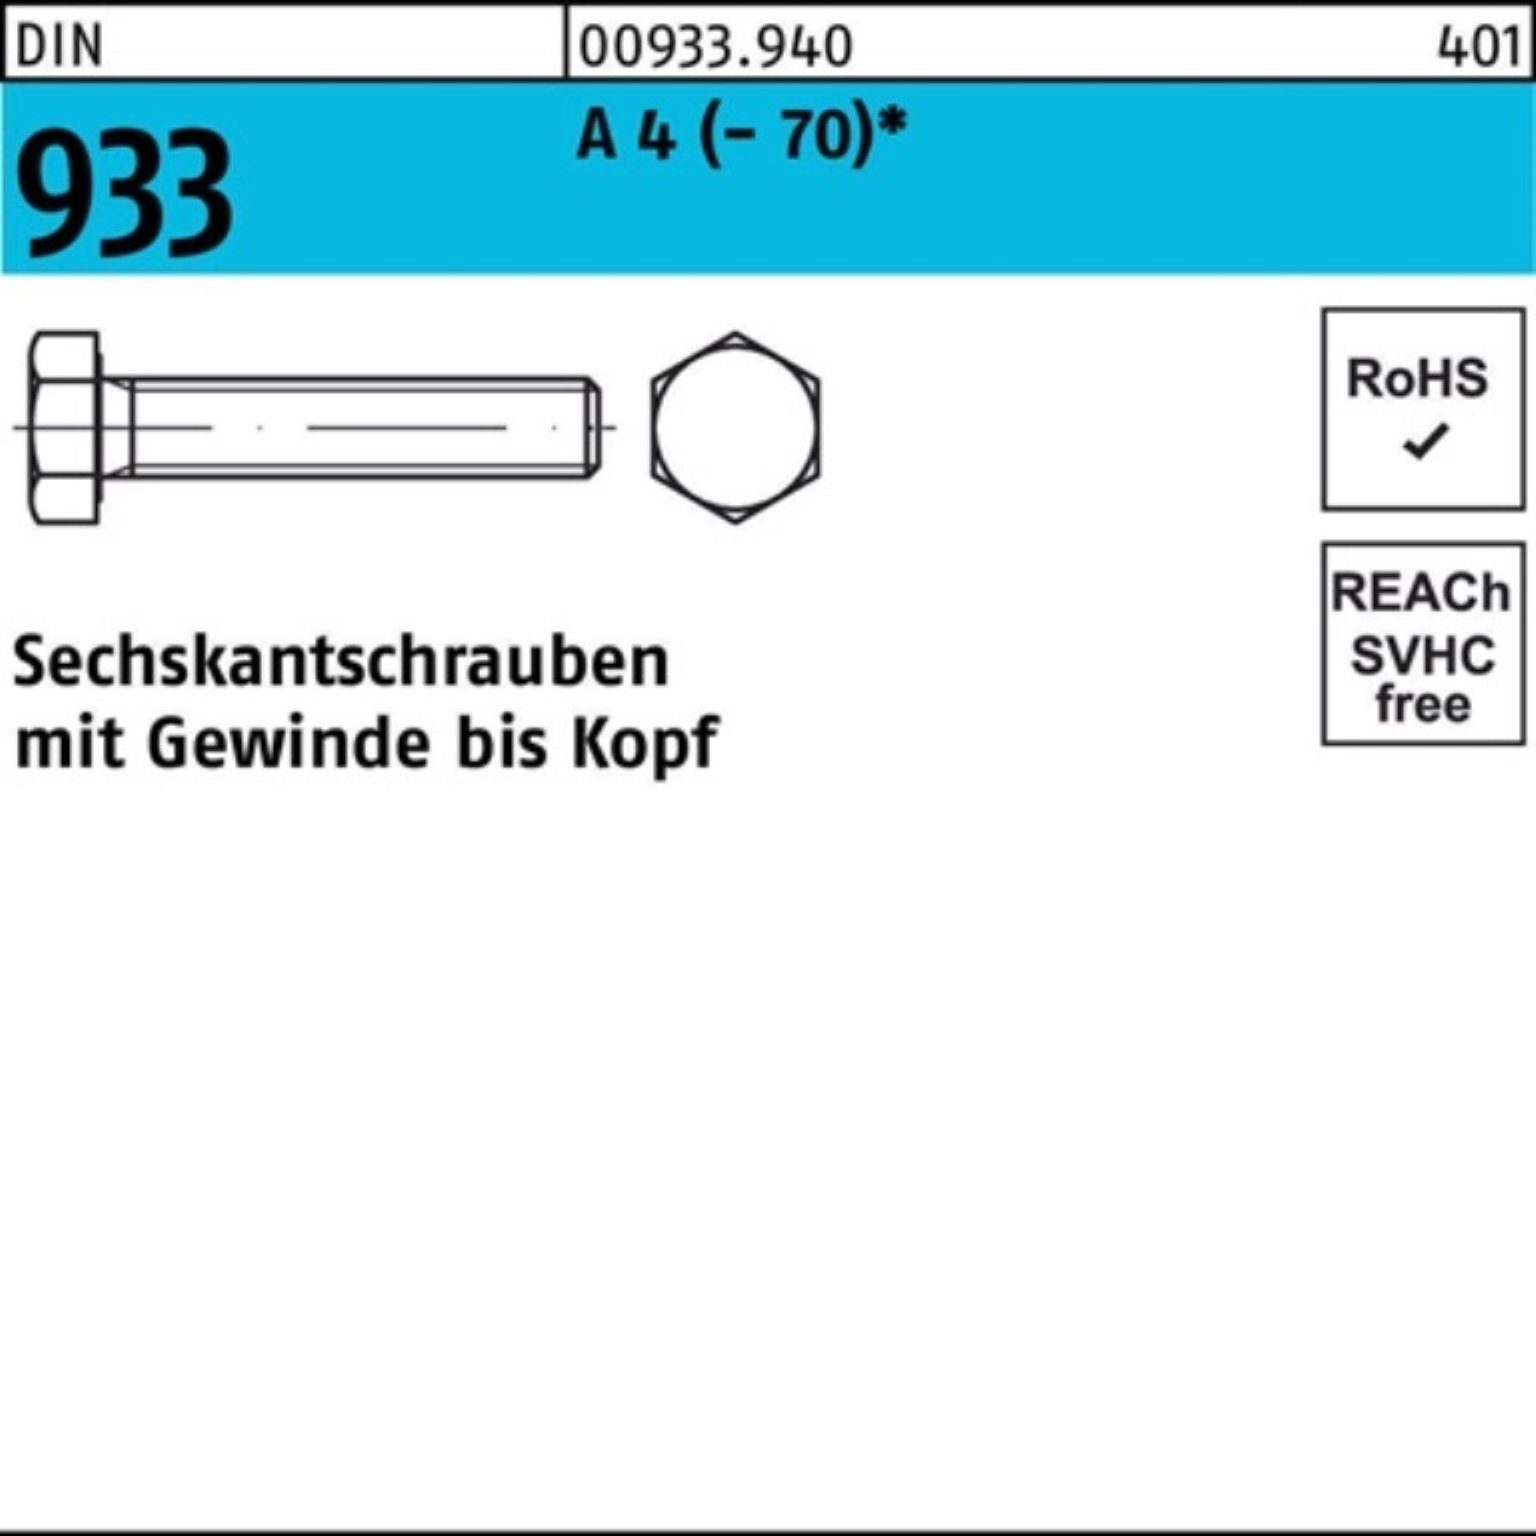 DIN 50 Sechskantschraube Sechskantschraube Reyher 933 Pack 100er Stück 4 VG (70) D A M12x 90